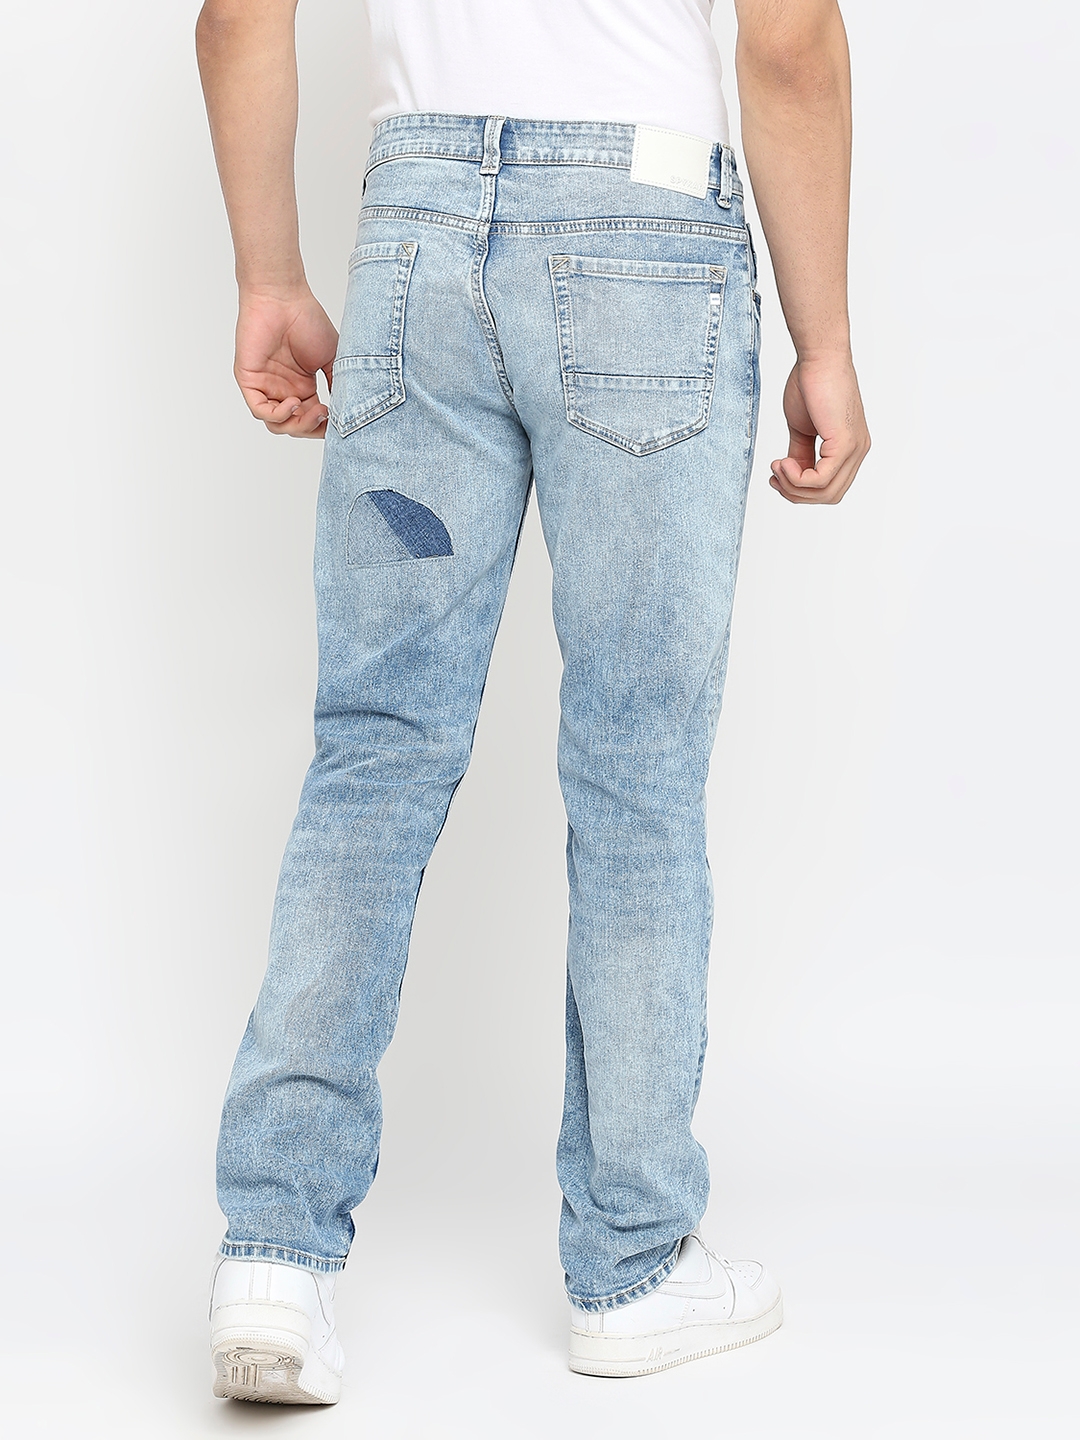 Spykar | Men's Blue Cotton Solid Jeans 3